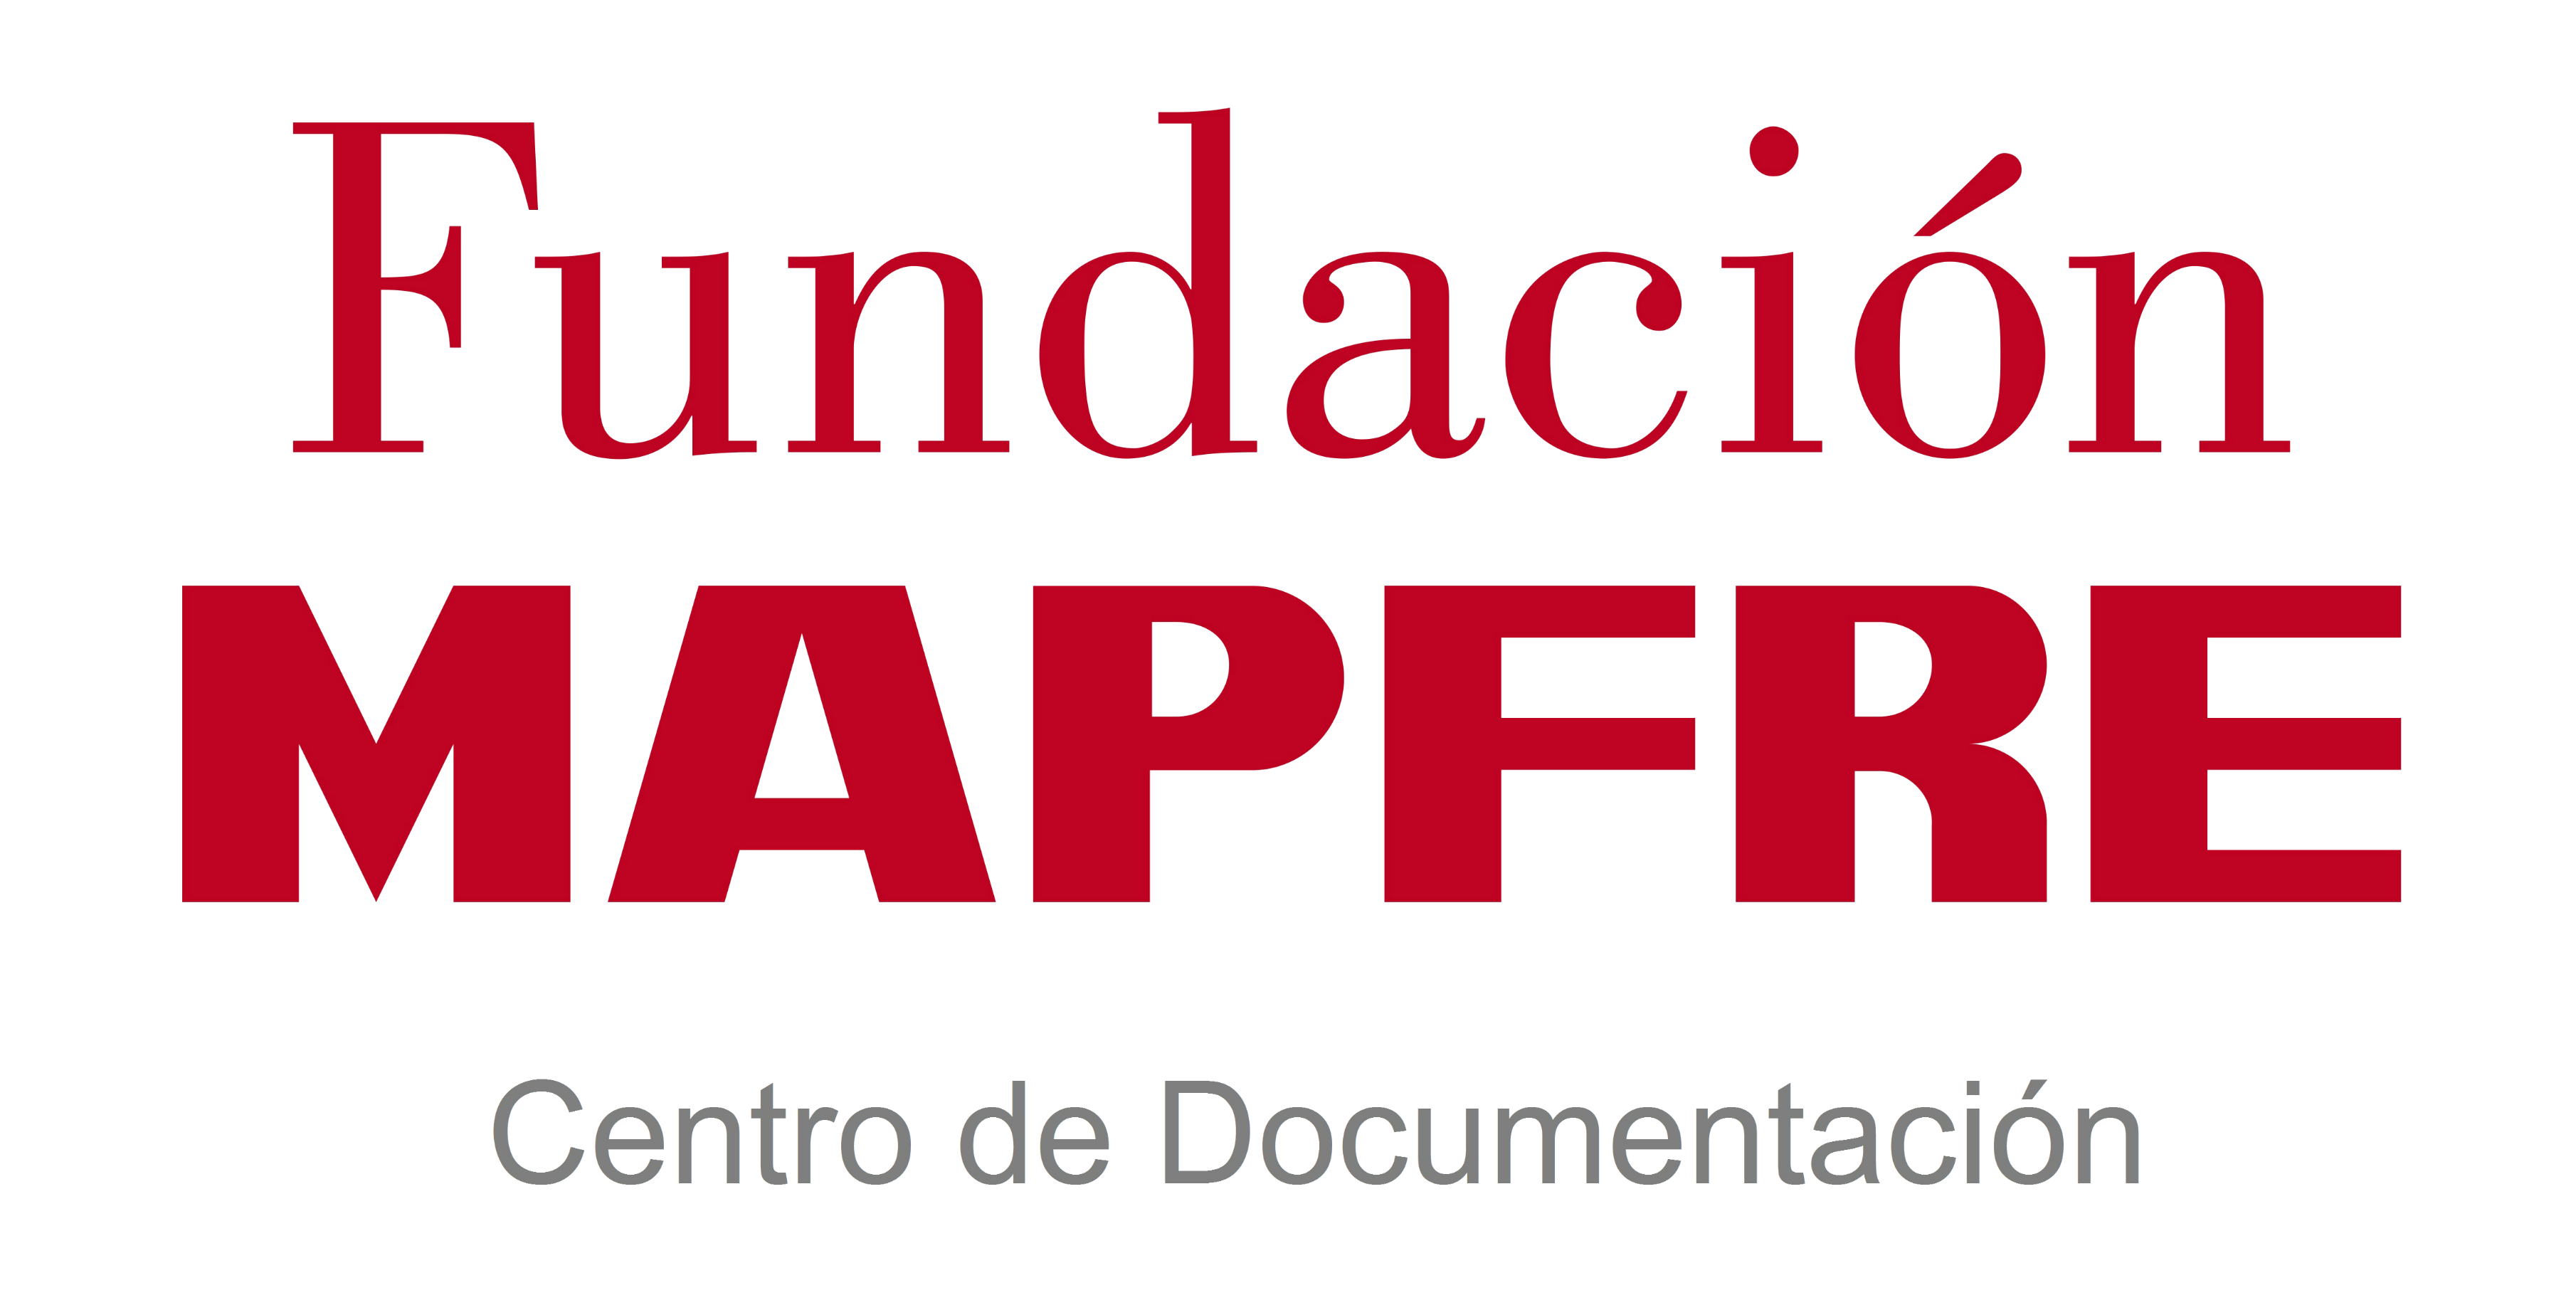 Centro de Documentación Fundación MAPFRE